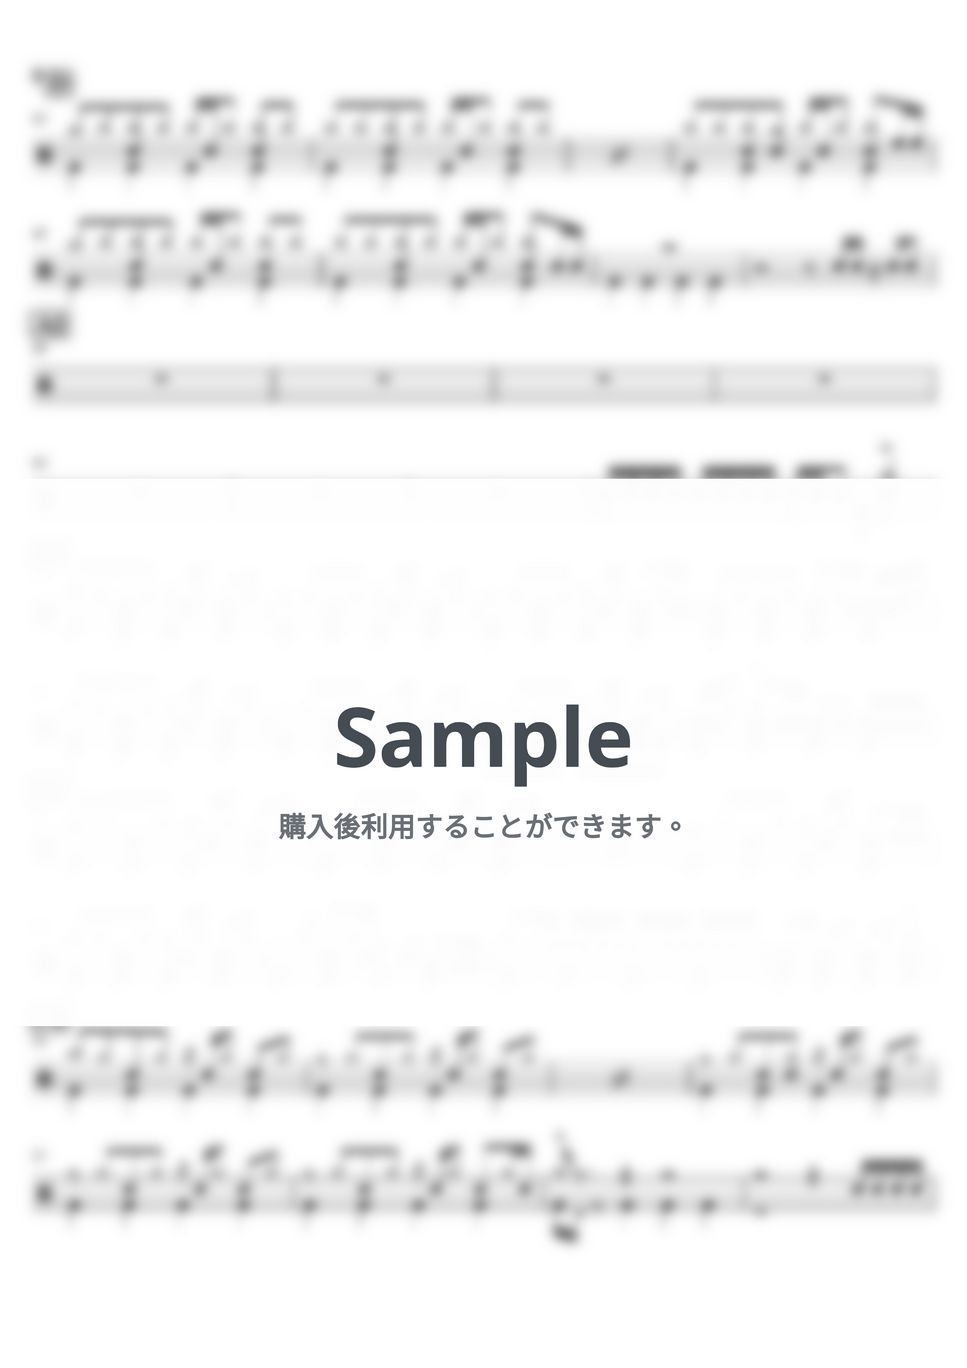 神聖かまってちゃん - フロントメモリー（の子vo.ver） (ドラム譜面) by cabal